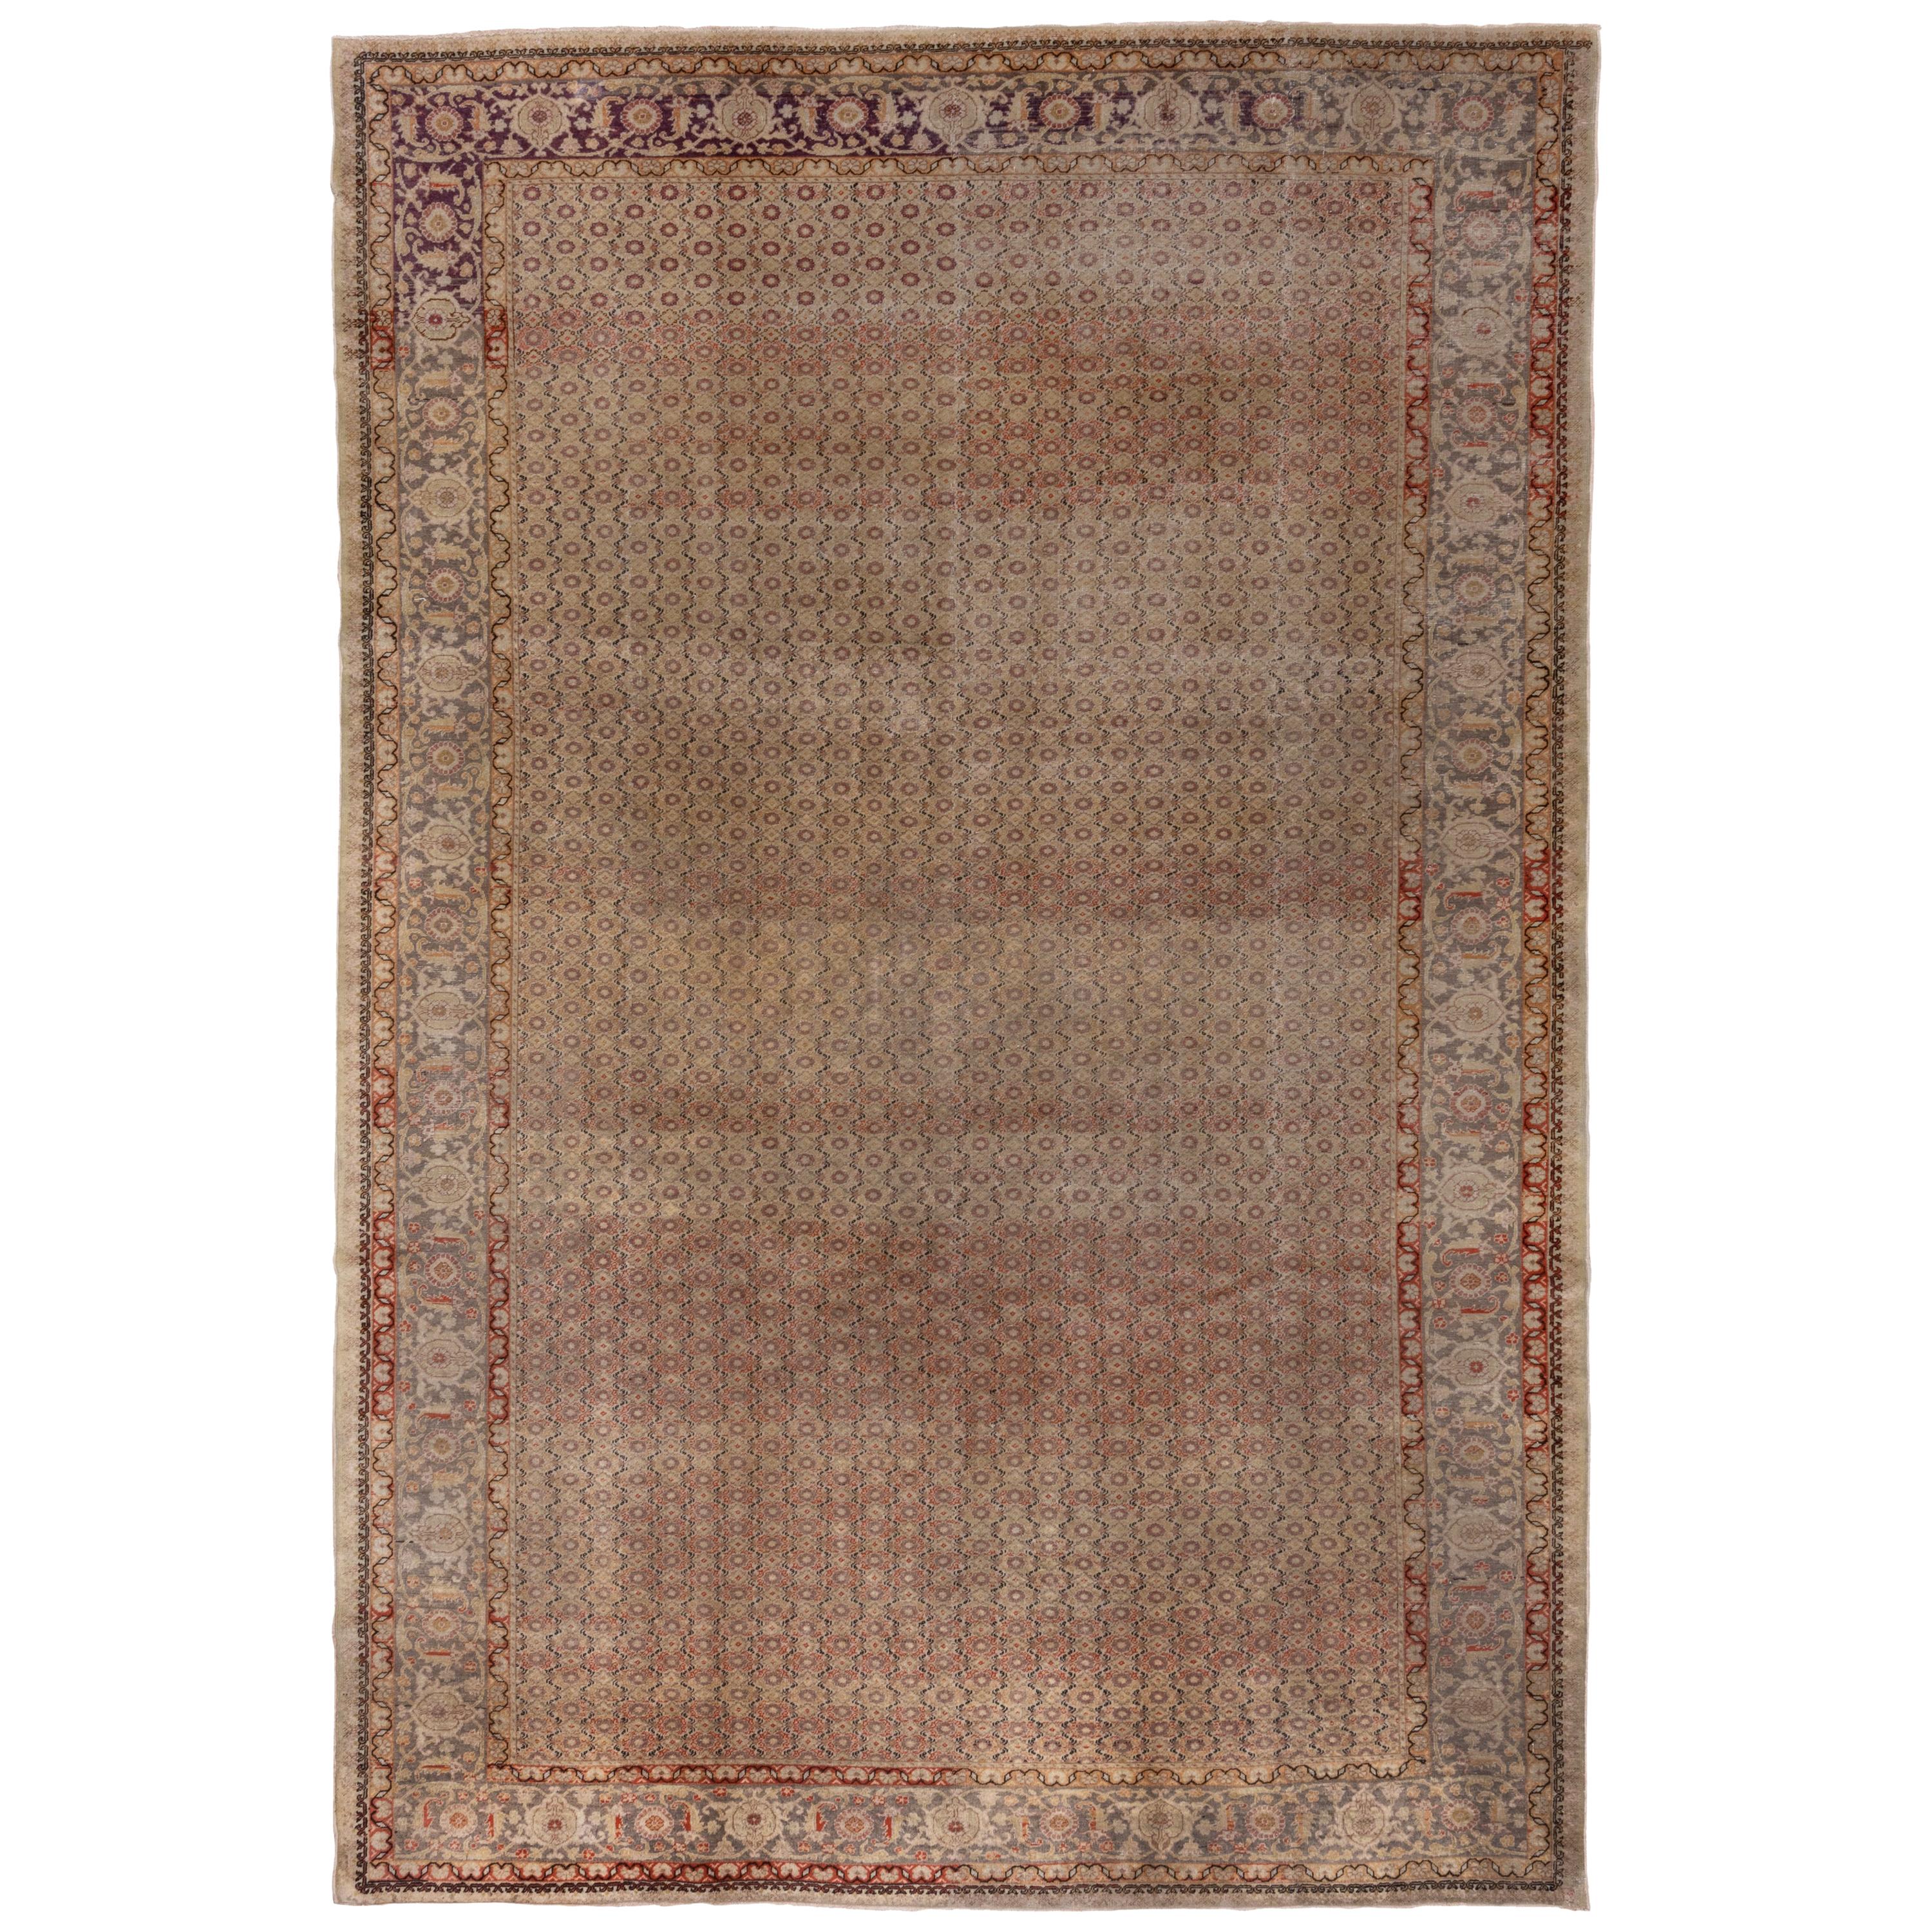 Antique Sivas Carpet, circa 1930s